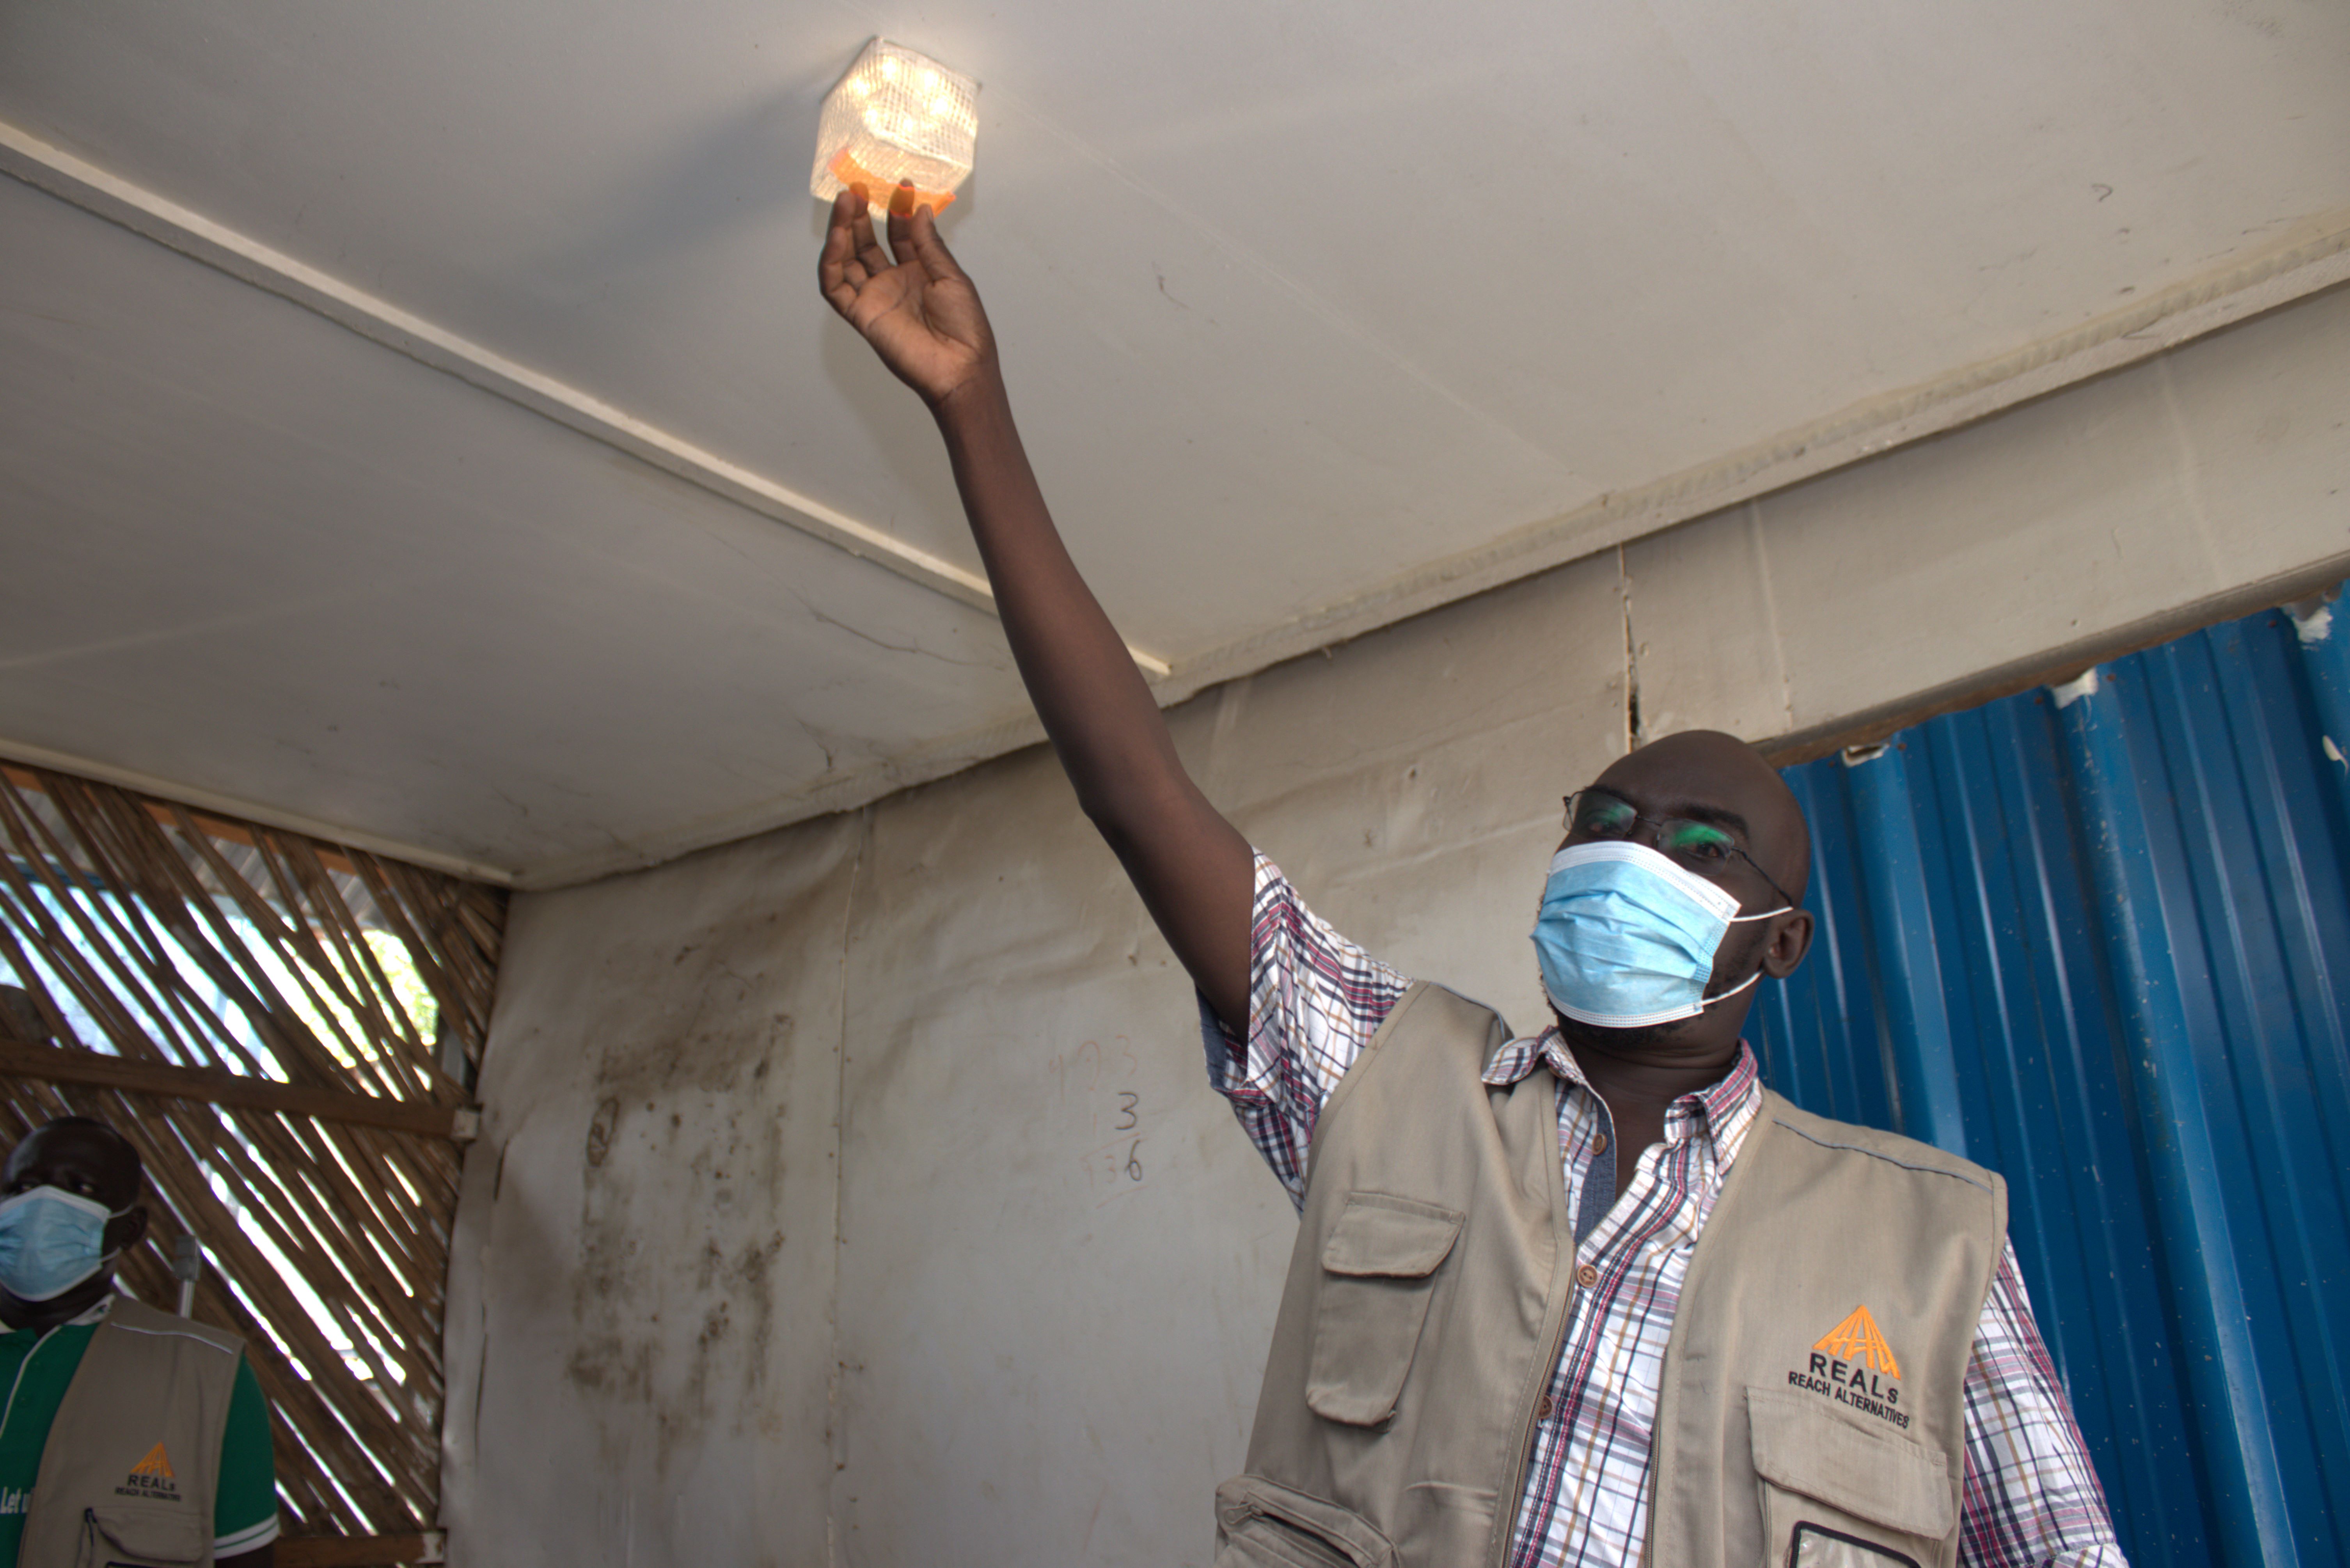 配布会場でCARRY THE SUNの使い方を説明するREALs南スーダン・スタッフ